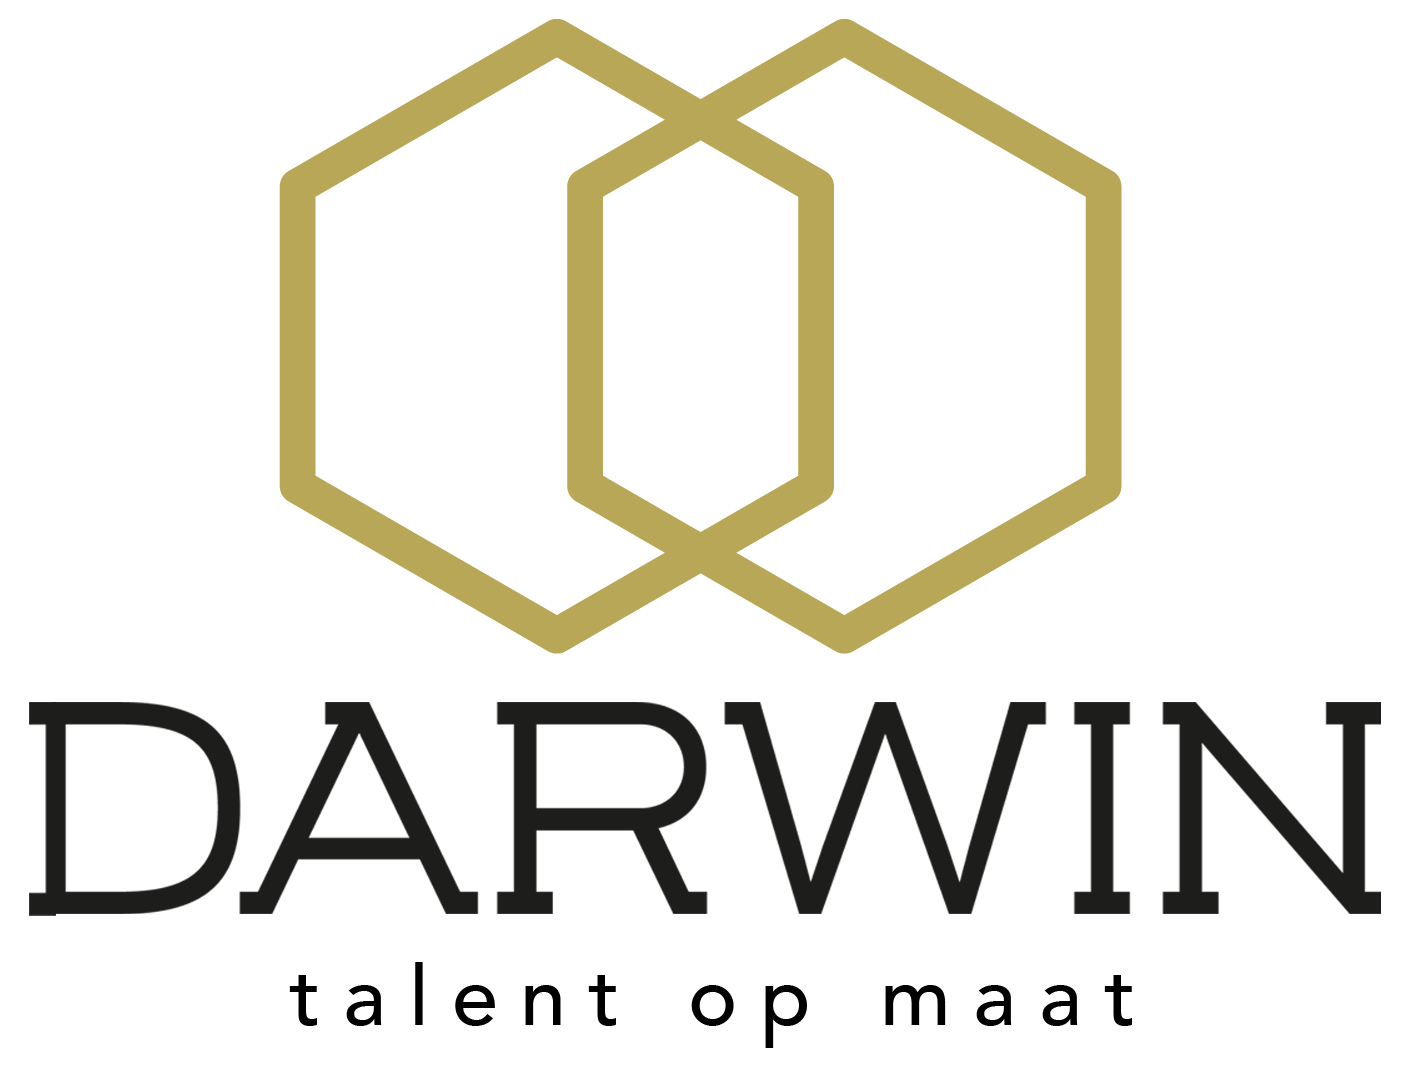 Darwin technical